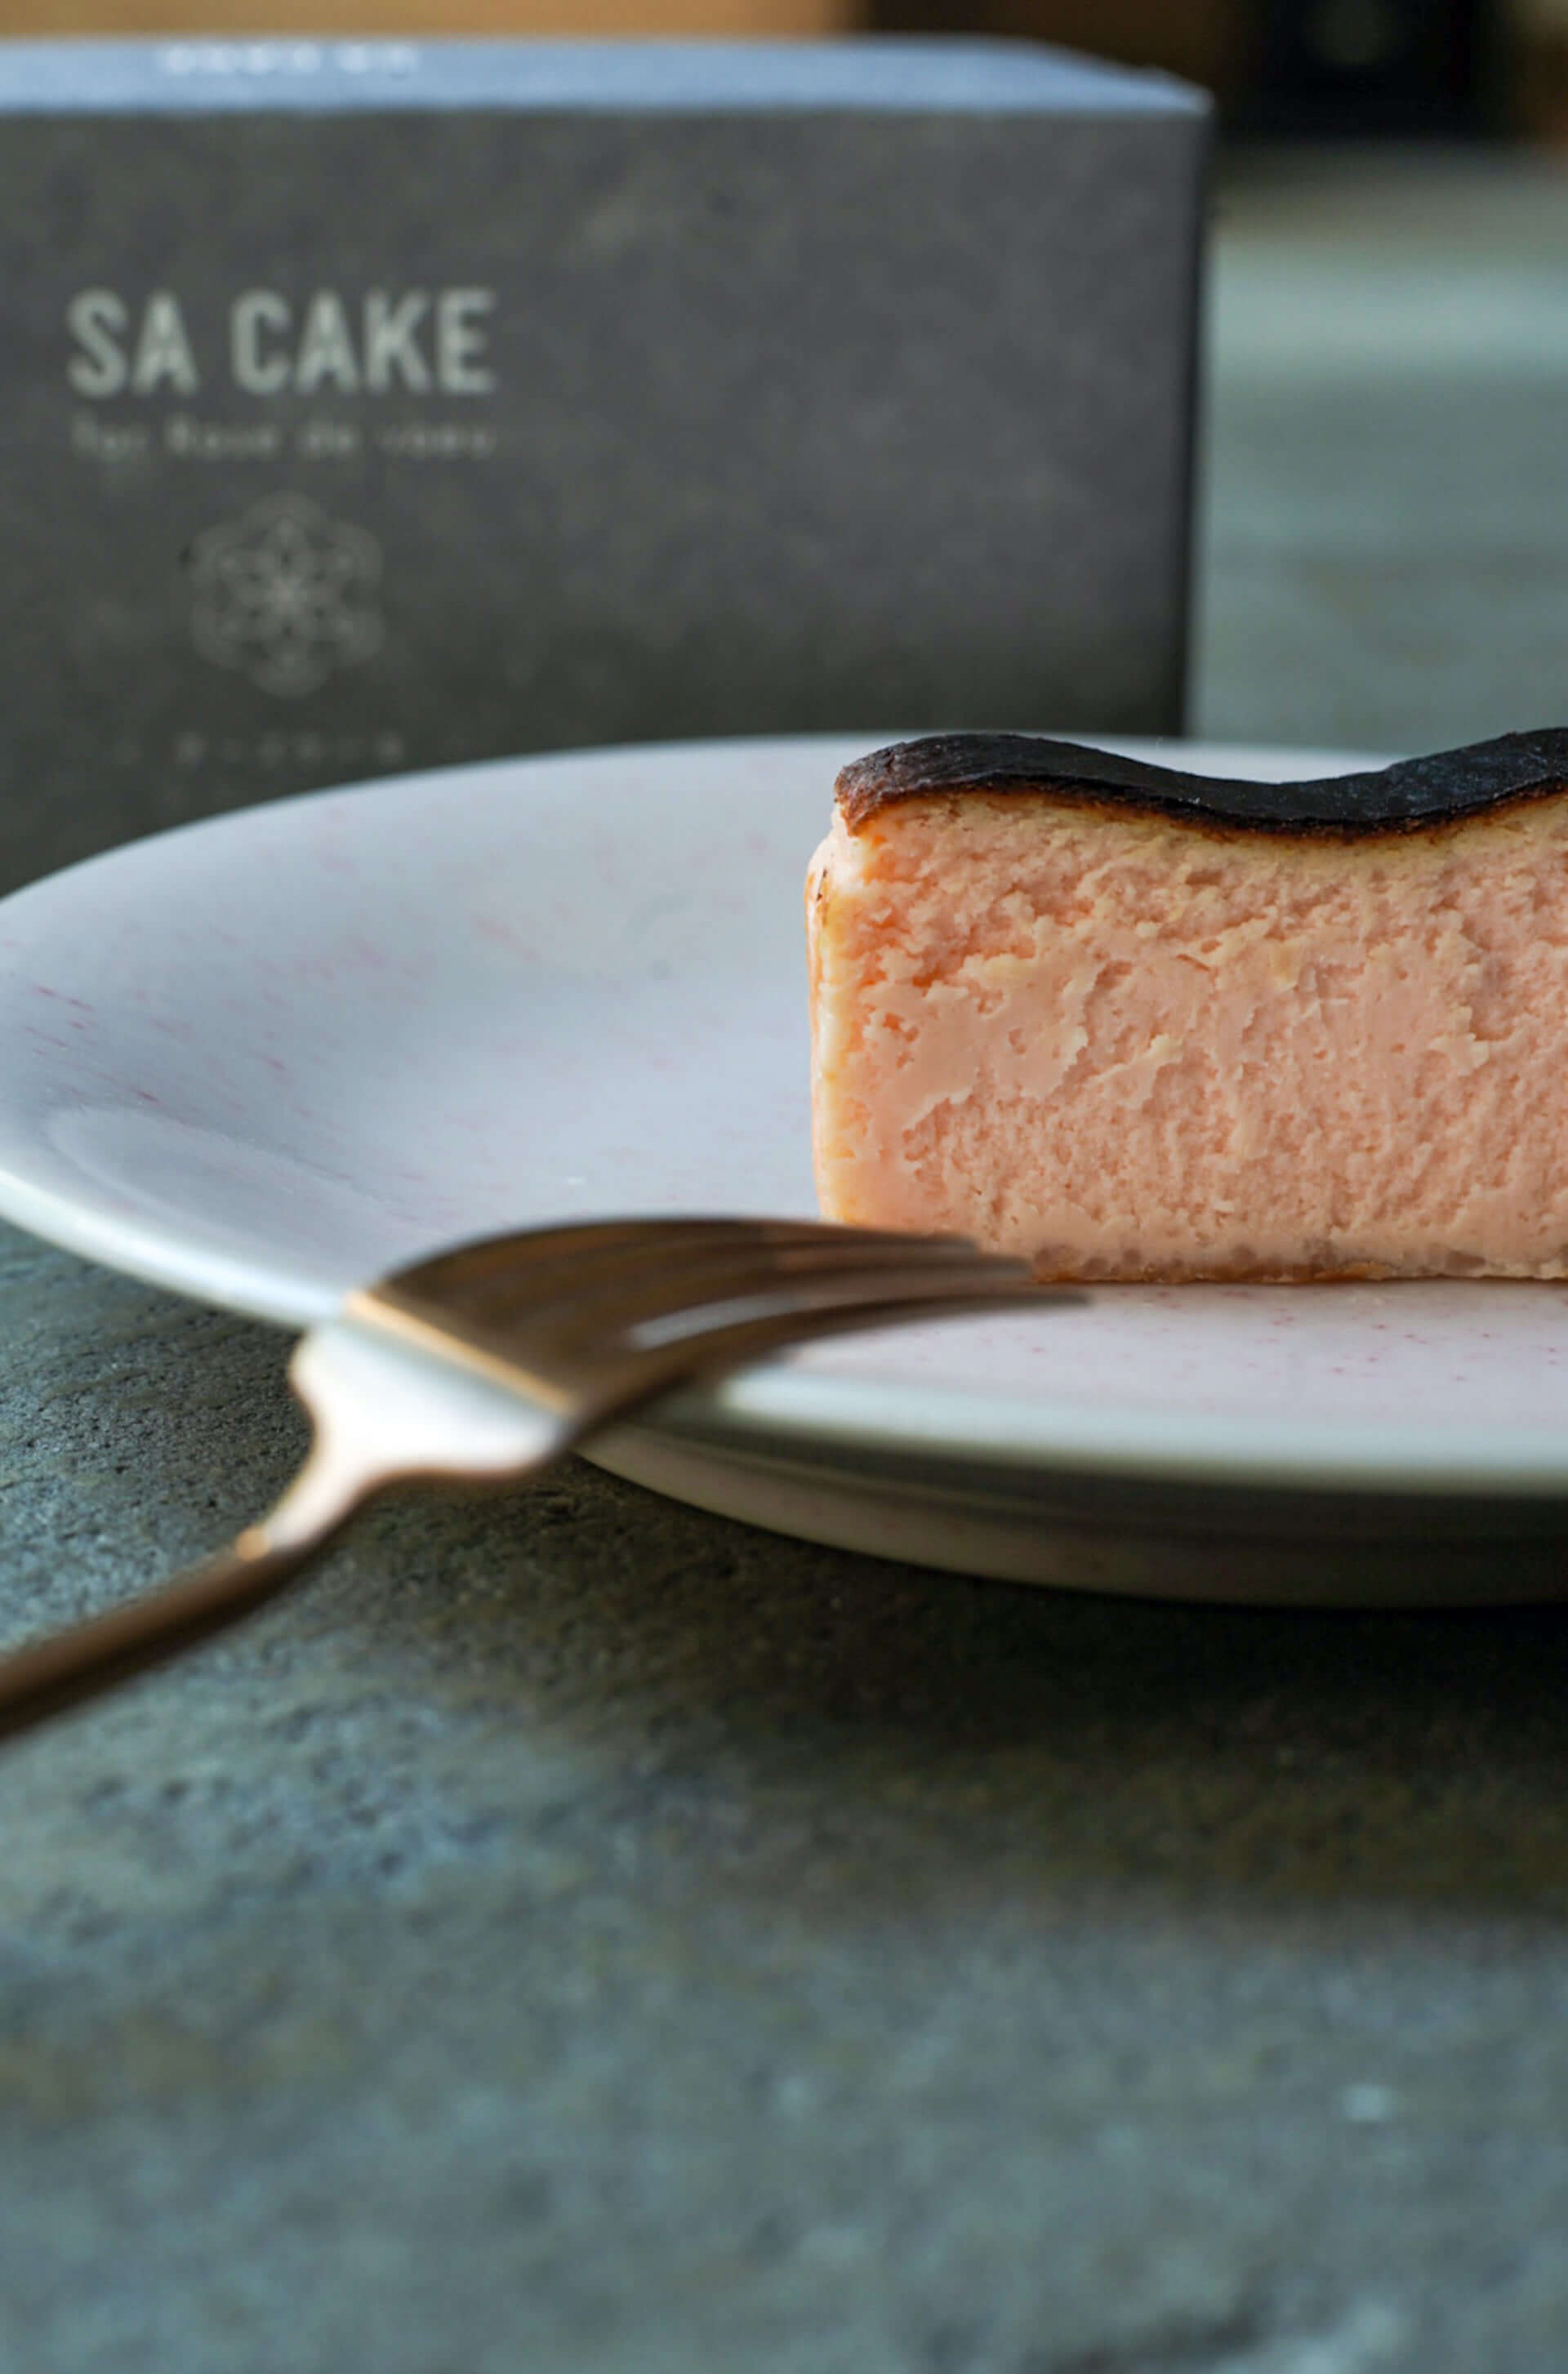 酒粕と黒豆を使用した新感覚のバスクチーズケーキ『SA CAKE for Rose de voeu』が発売決定！ gourmet210311_sacake_2-1920x2907